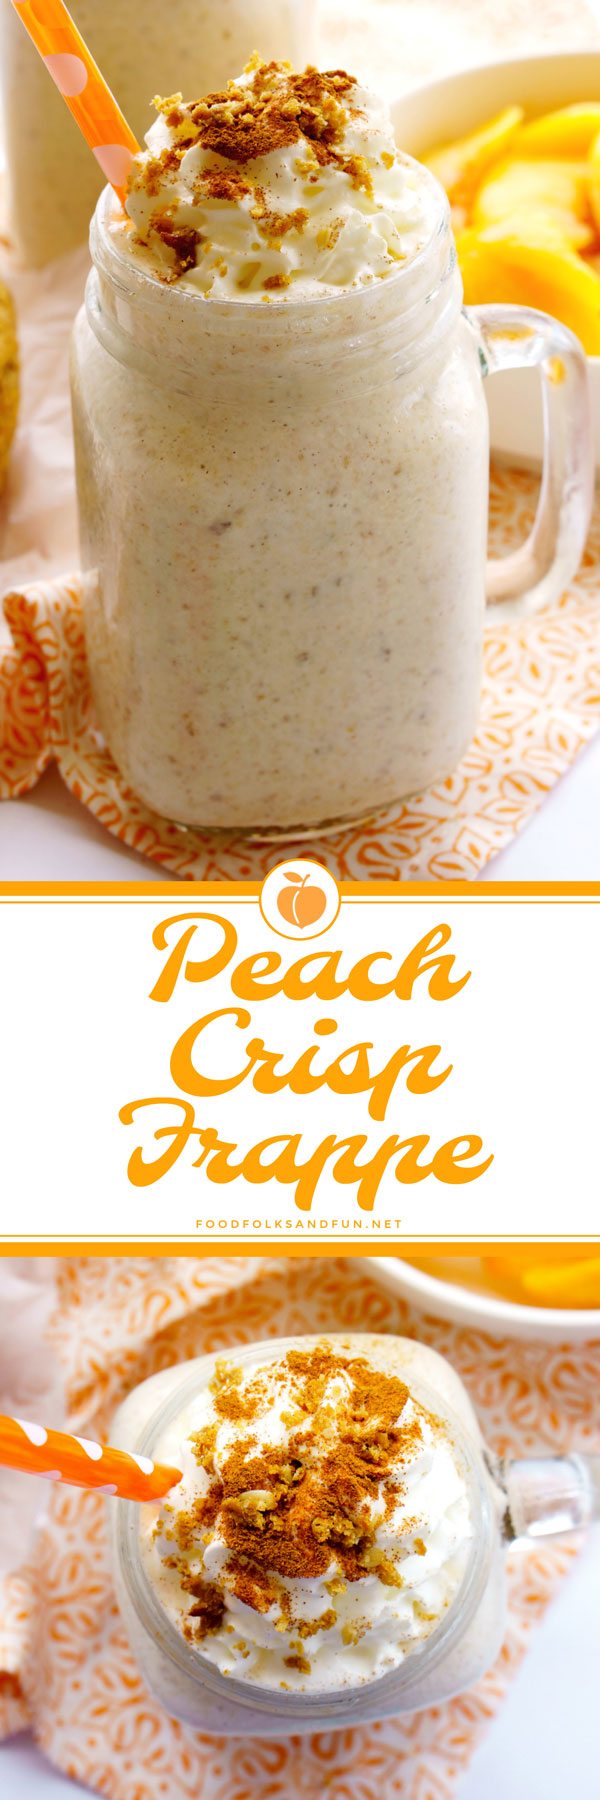 Peach Crisp made into a Frappe